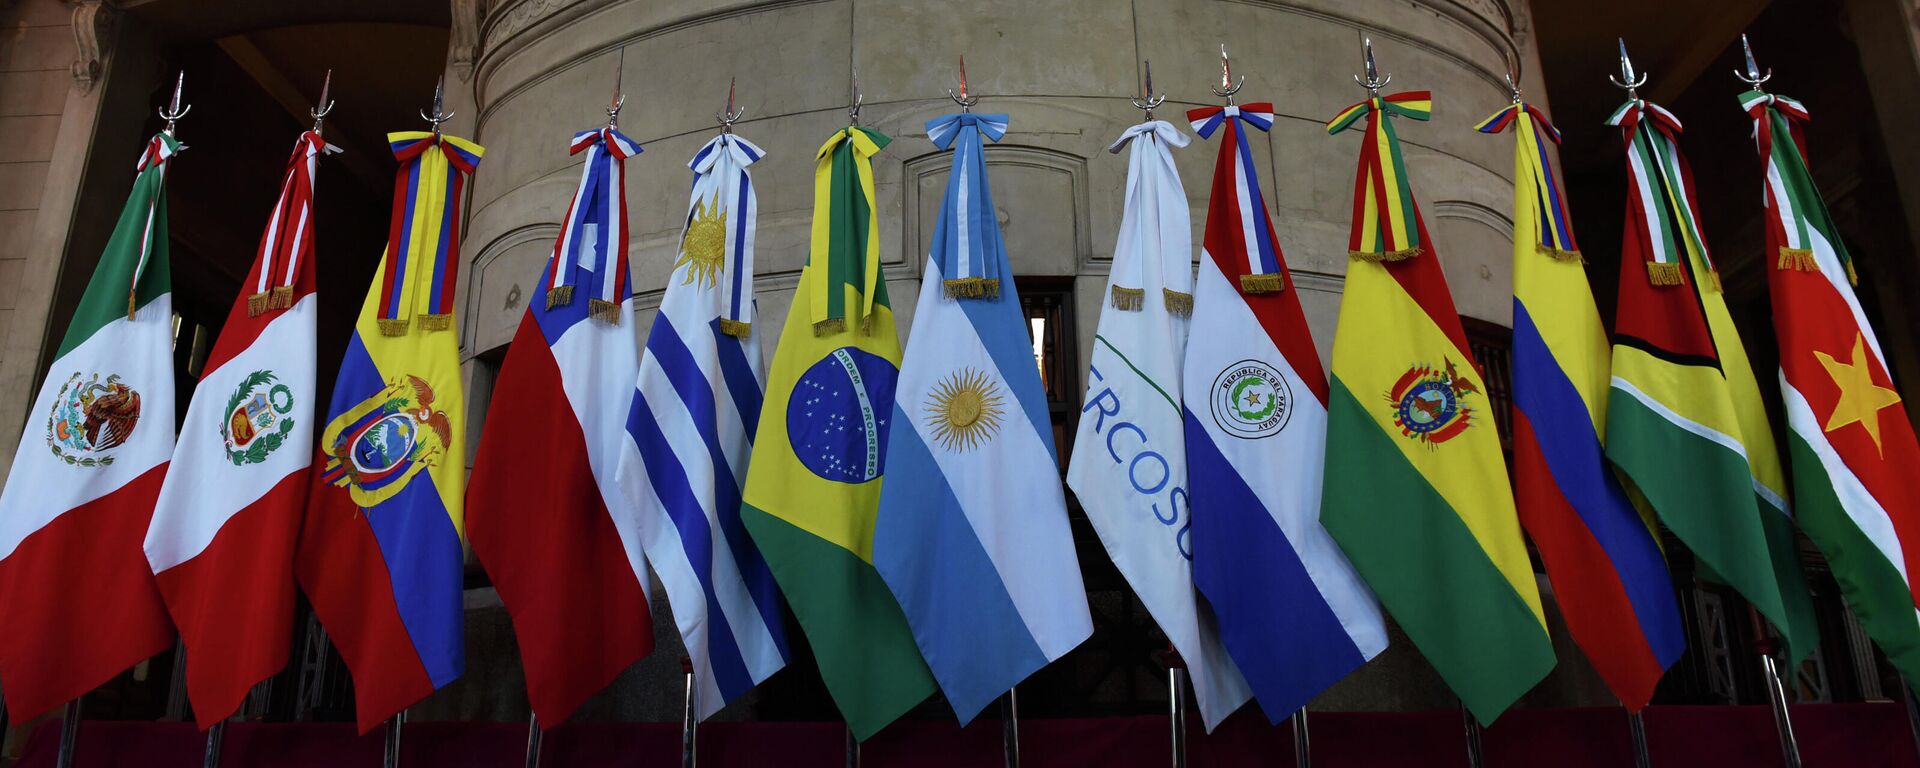 Banderas de miembros del Mercosur y Estados asociados - Sputnik Mundo, 1920, 26.03.2021